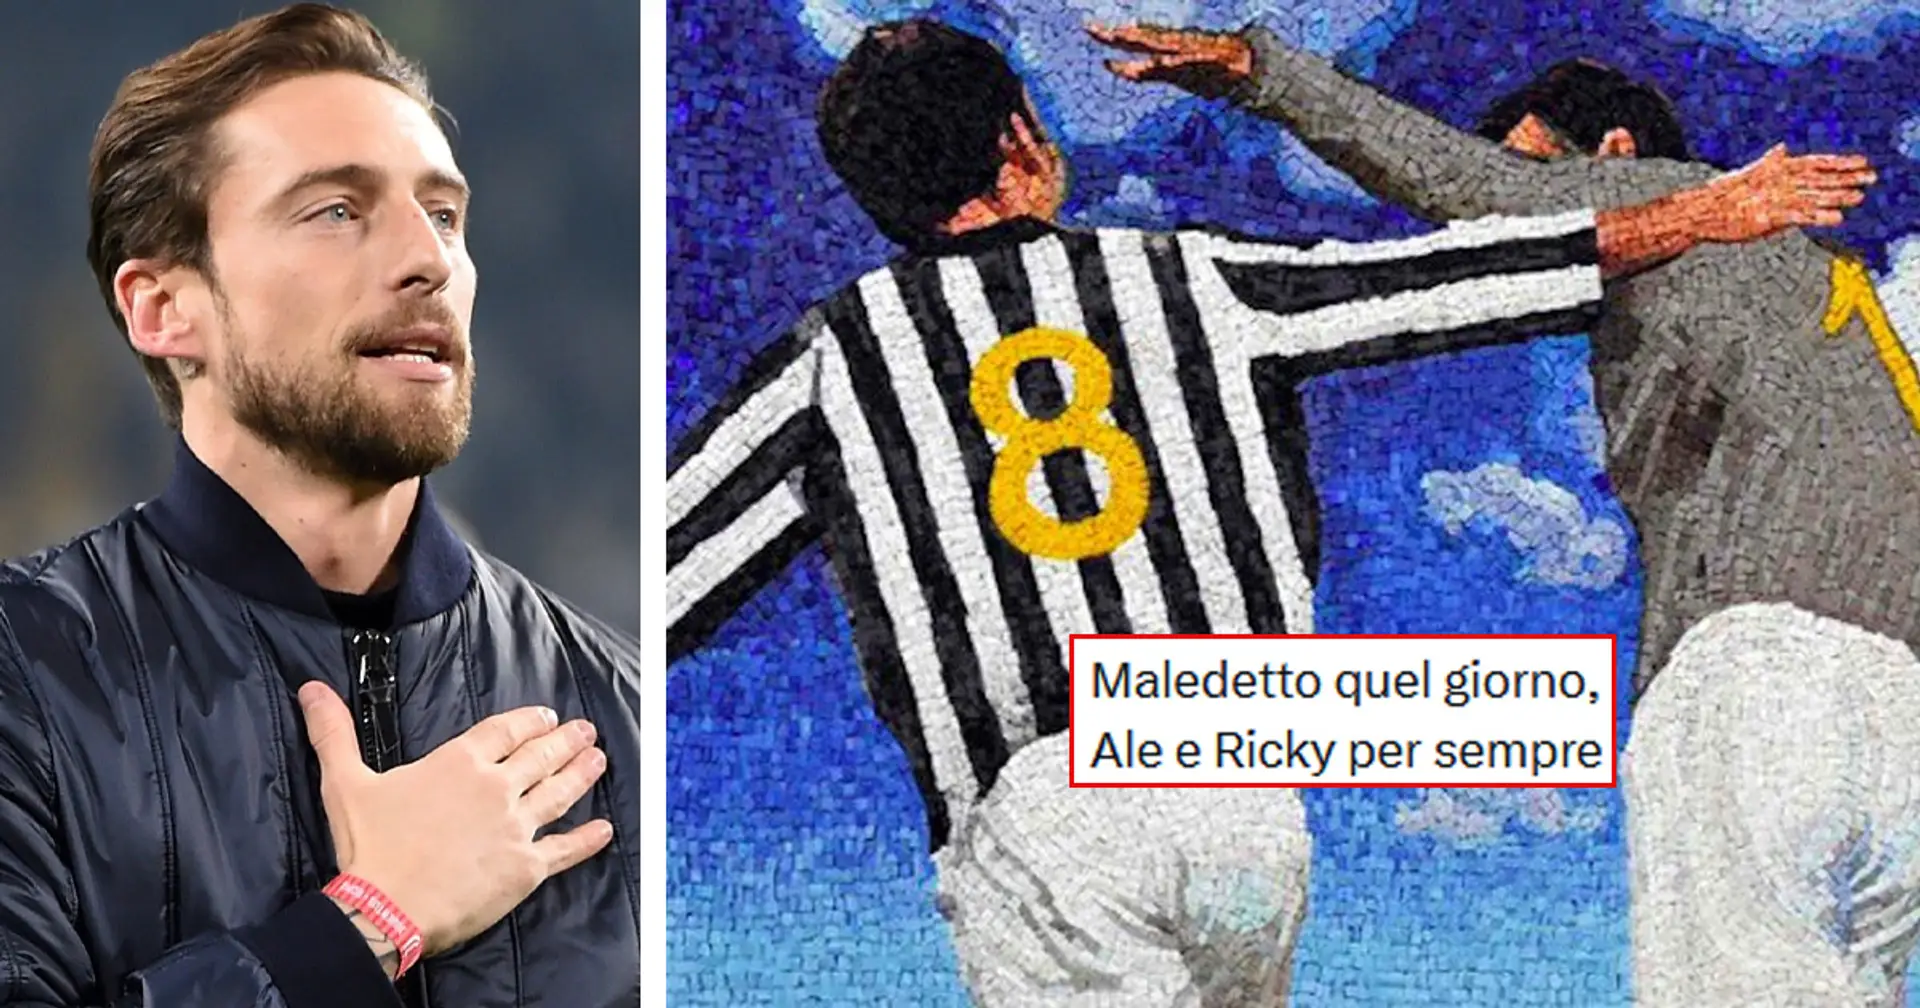 La Juve e Marchisio non dimenticano Ale e Ricky! Il ricordo toccante del 'Principino' sui social